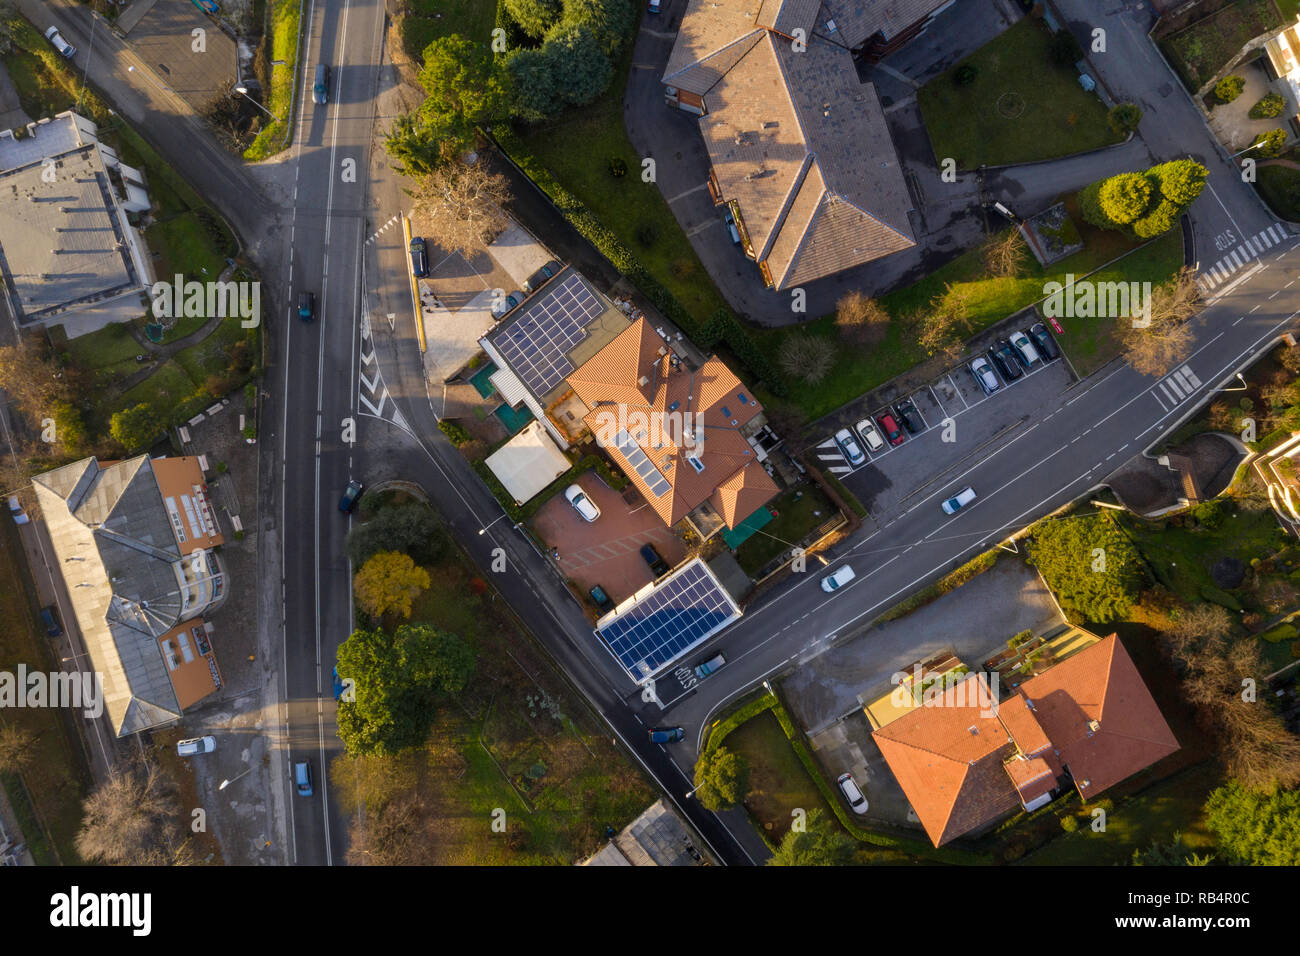 Regardant vers le bas, green tech, panneaux solaires, maisons urbaines, les routes jour aerial Banque D'Images